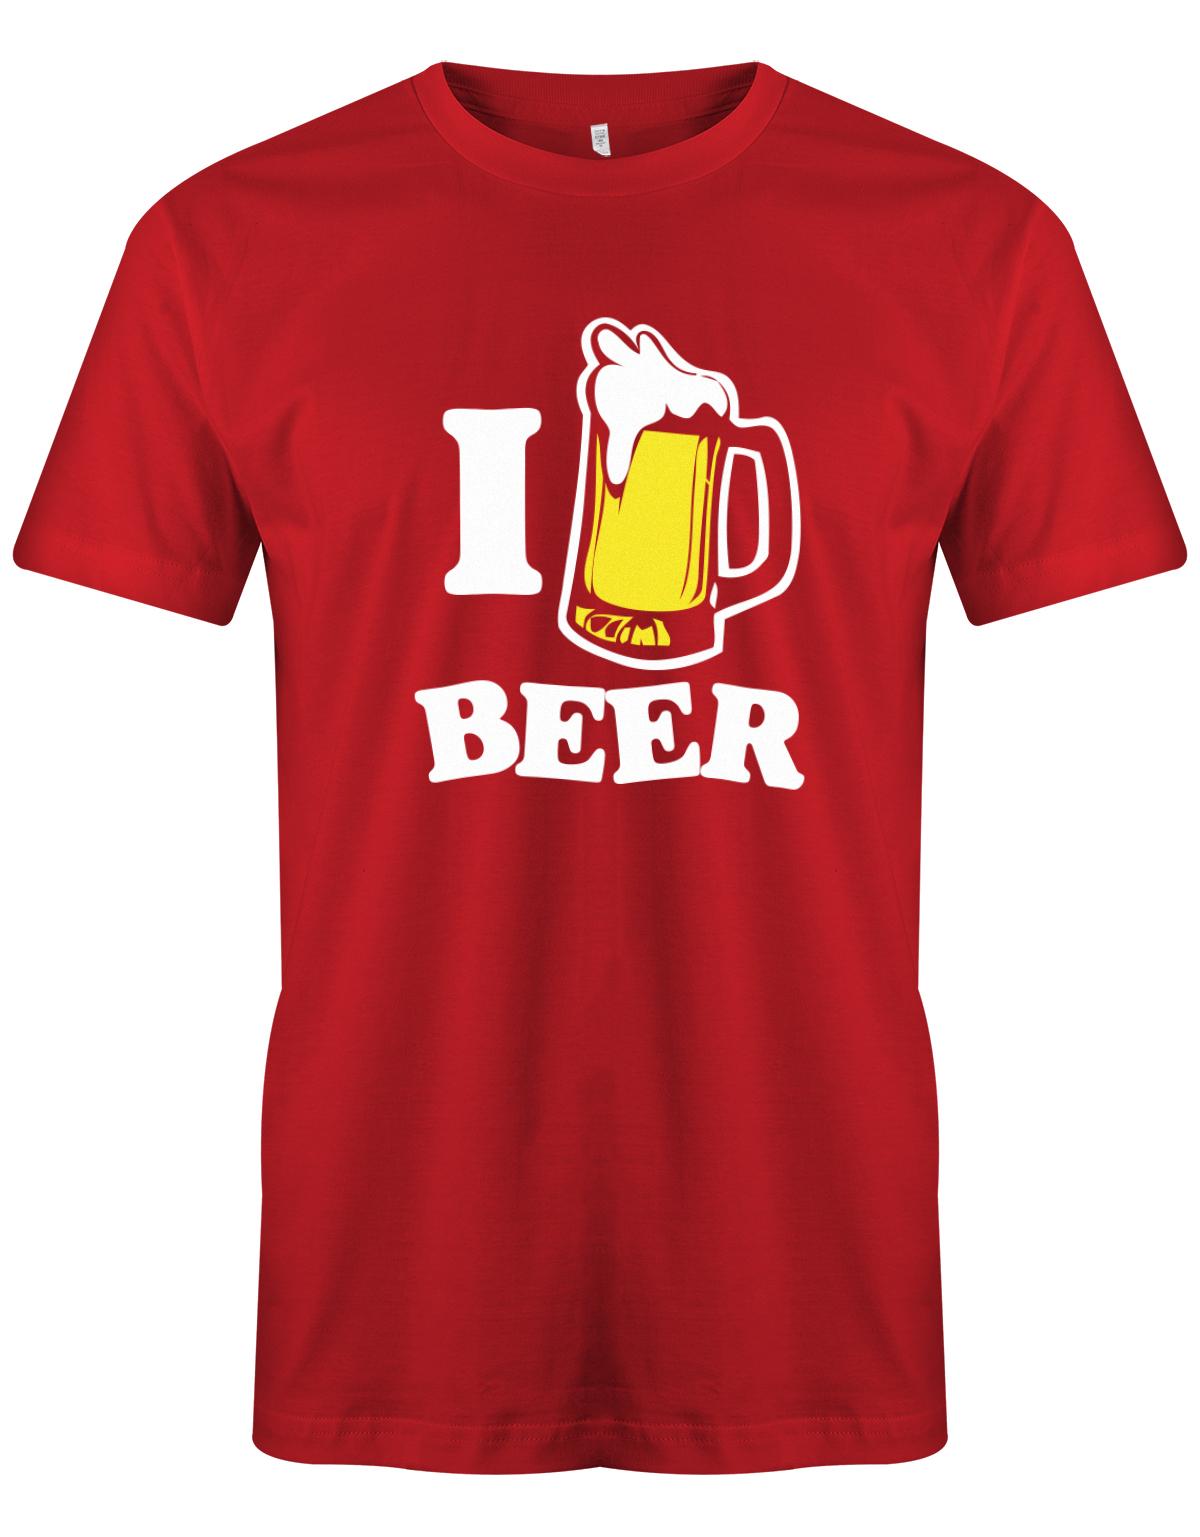 I-love-Beer-herren-bier-Shirt-Rot